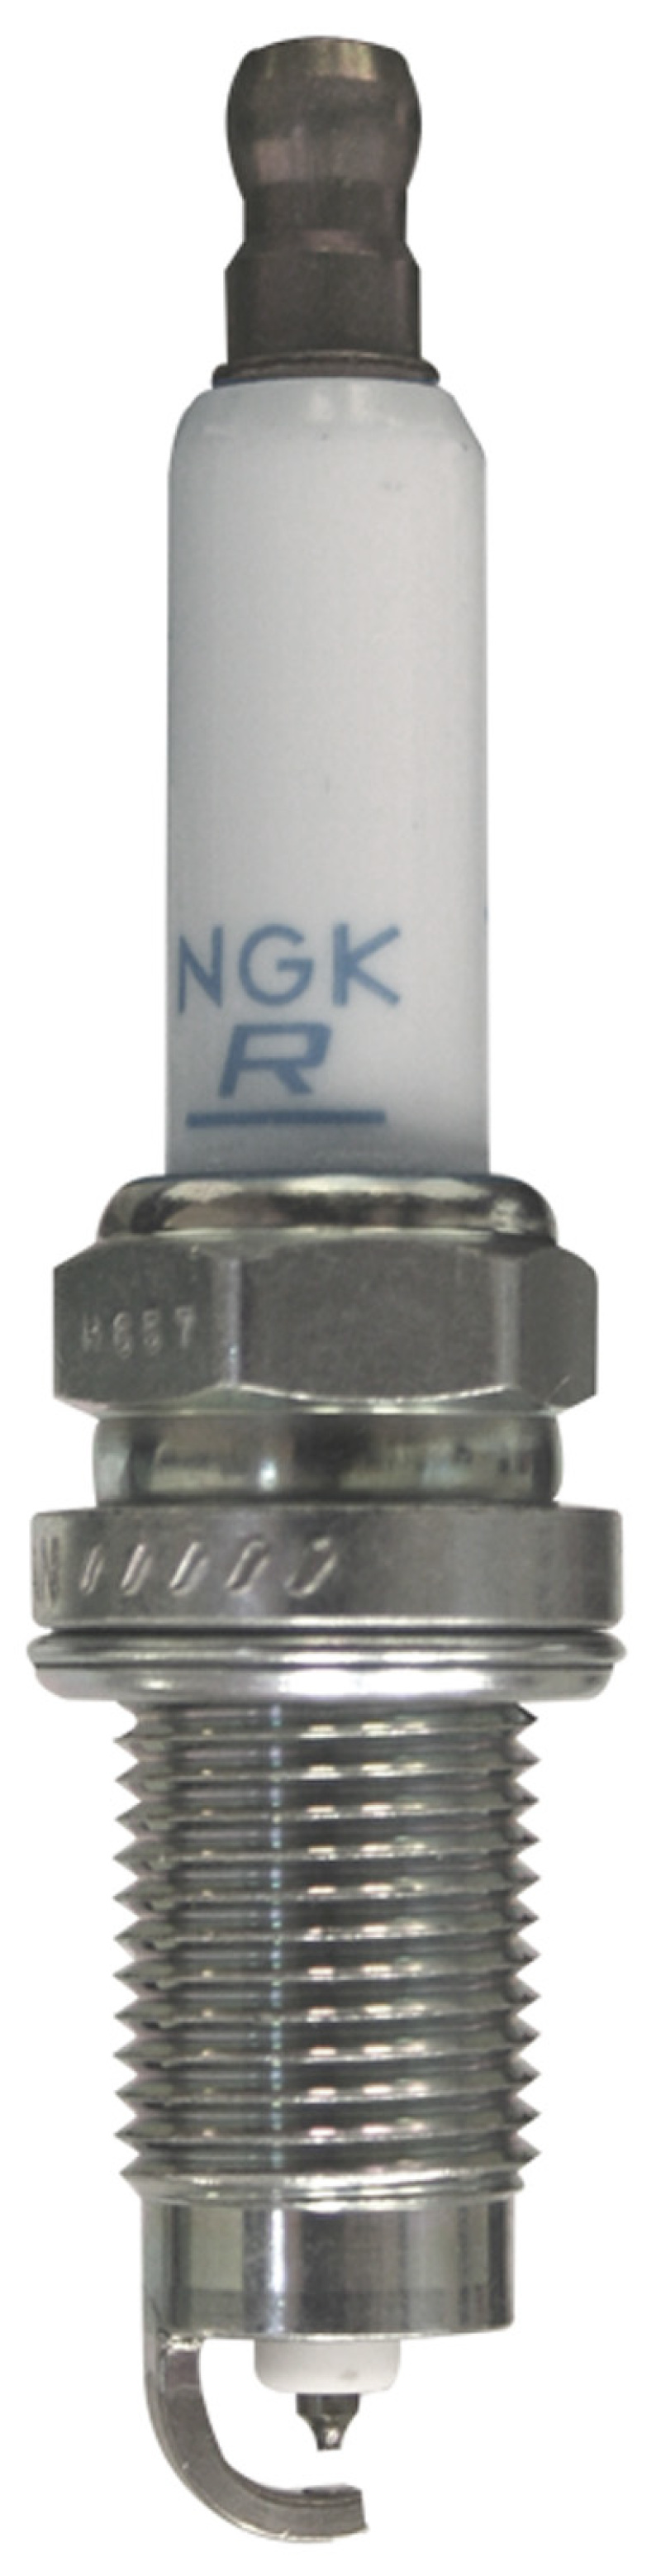 NGK Laser Platinum Spark Plug Box of 4 (PZFR5Q-11) - 6737